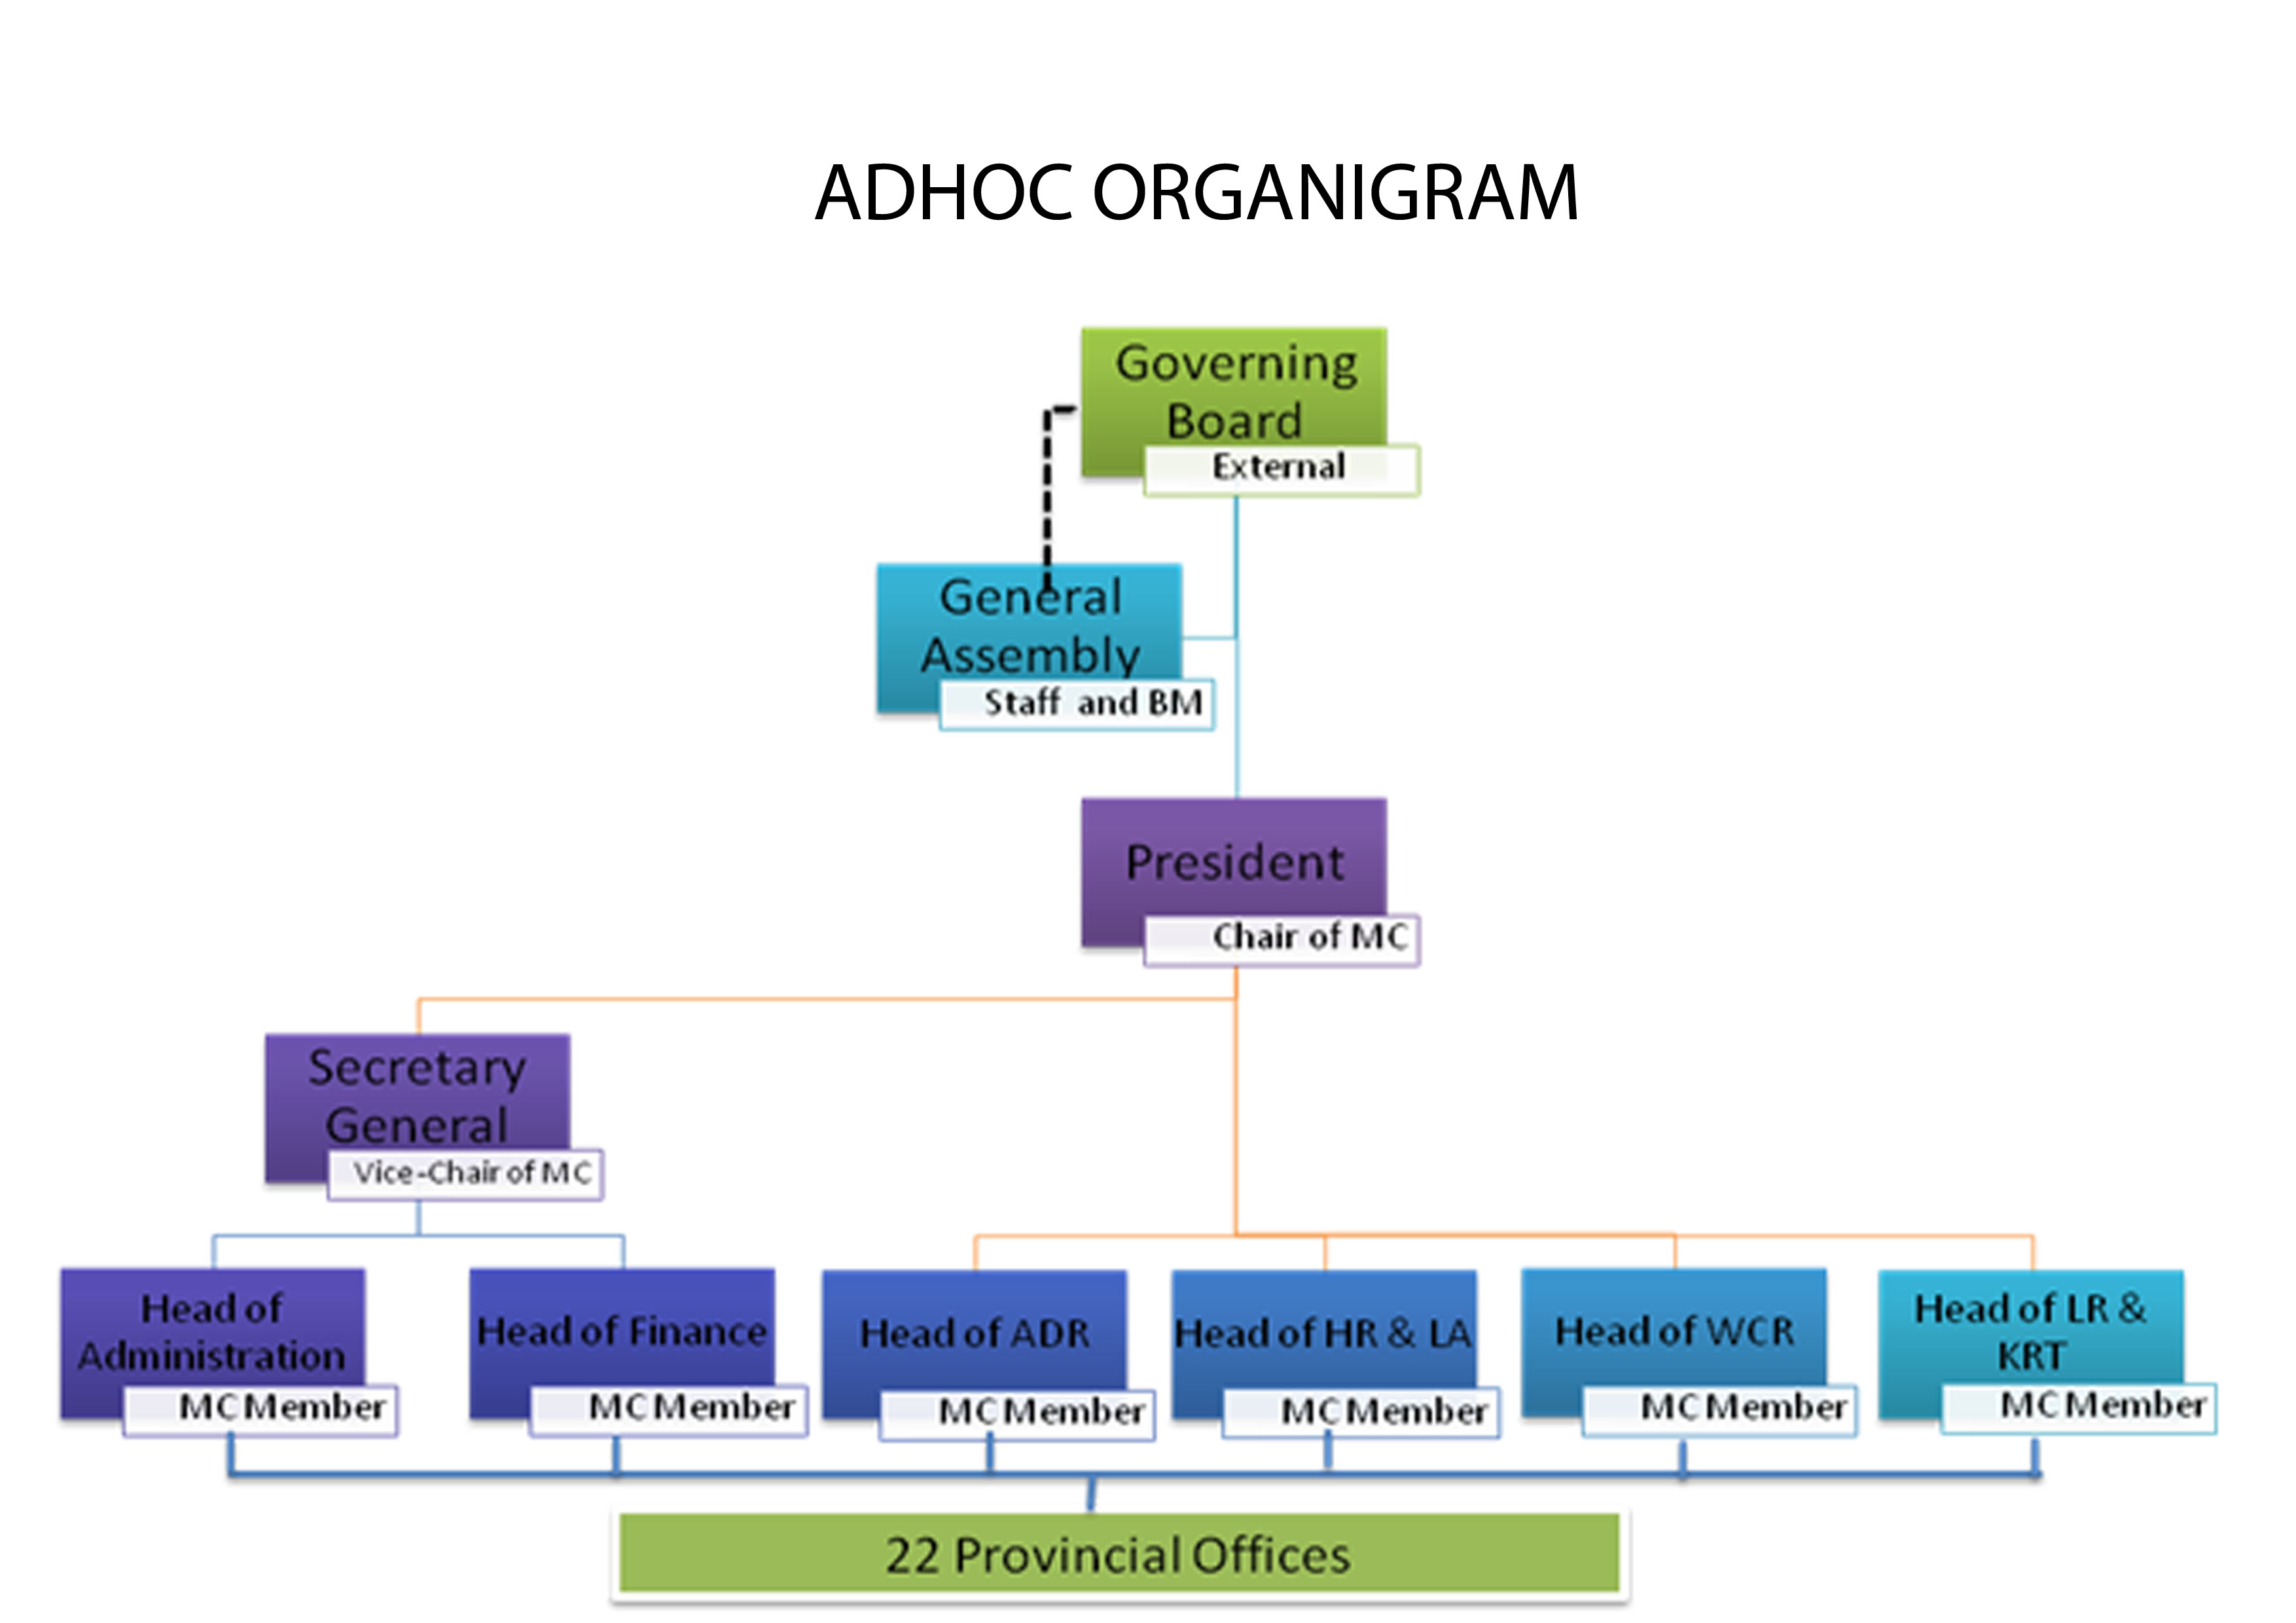 ADHOC Organigram released in 2014